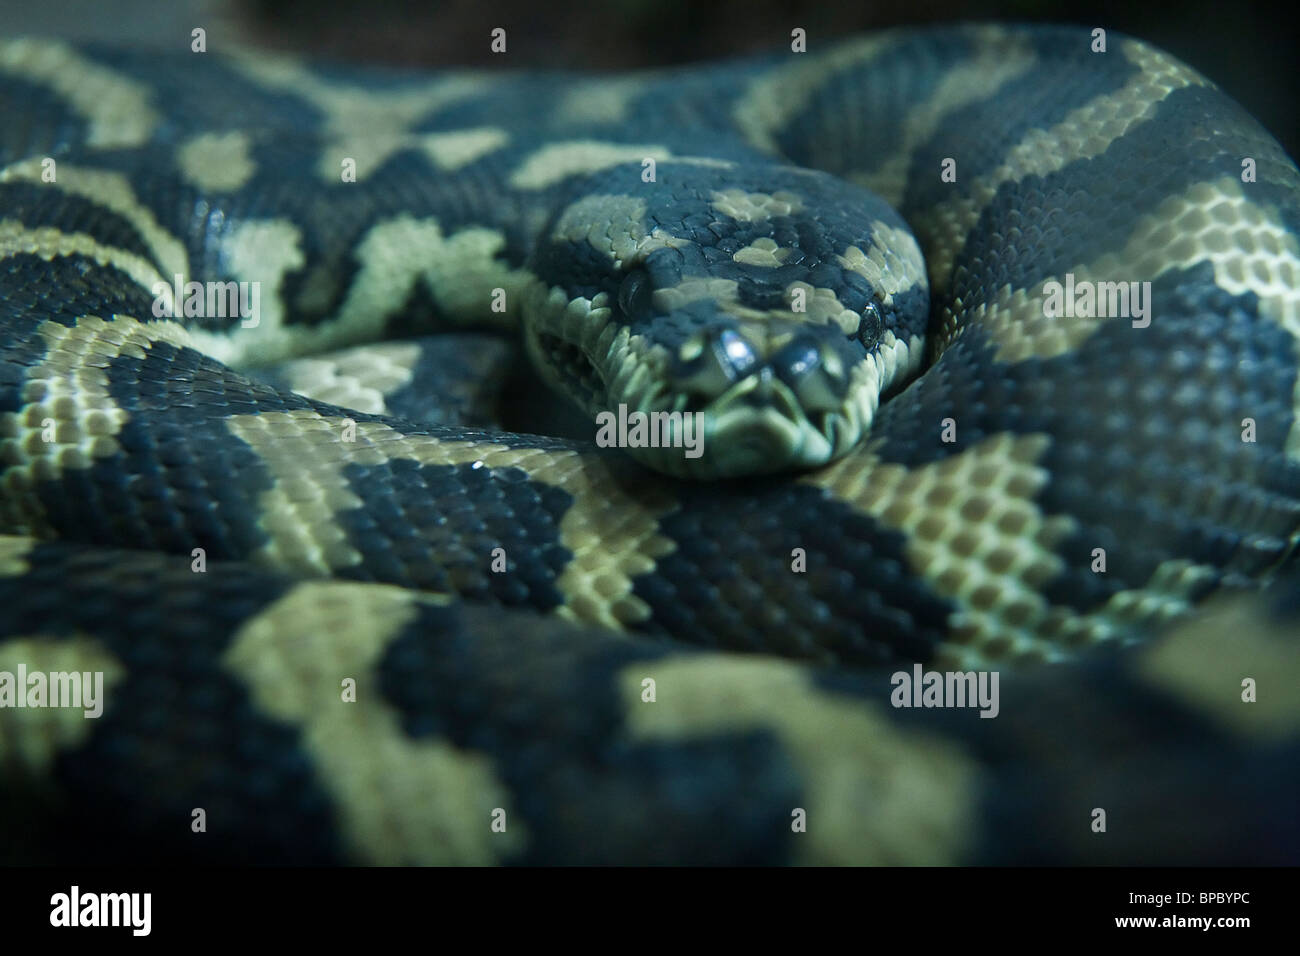 Closeup / Seleccione centrarse de una serpiente enroscada Foto de stock